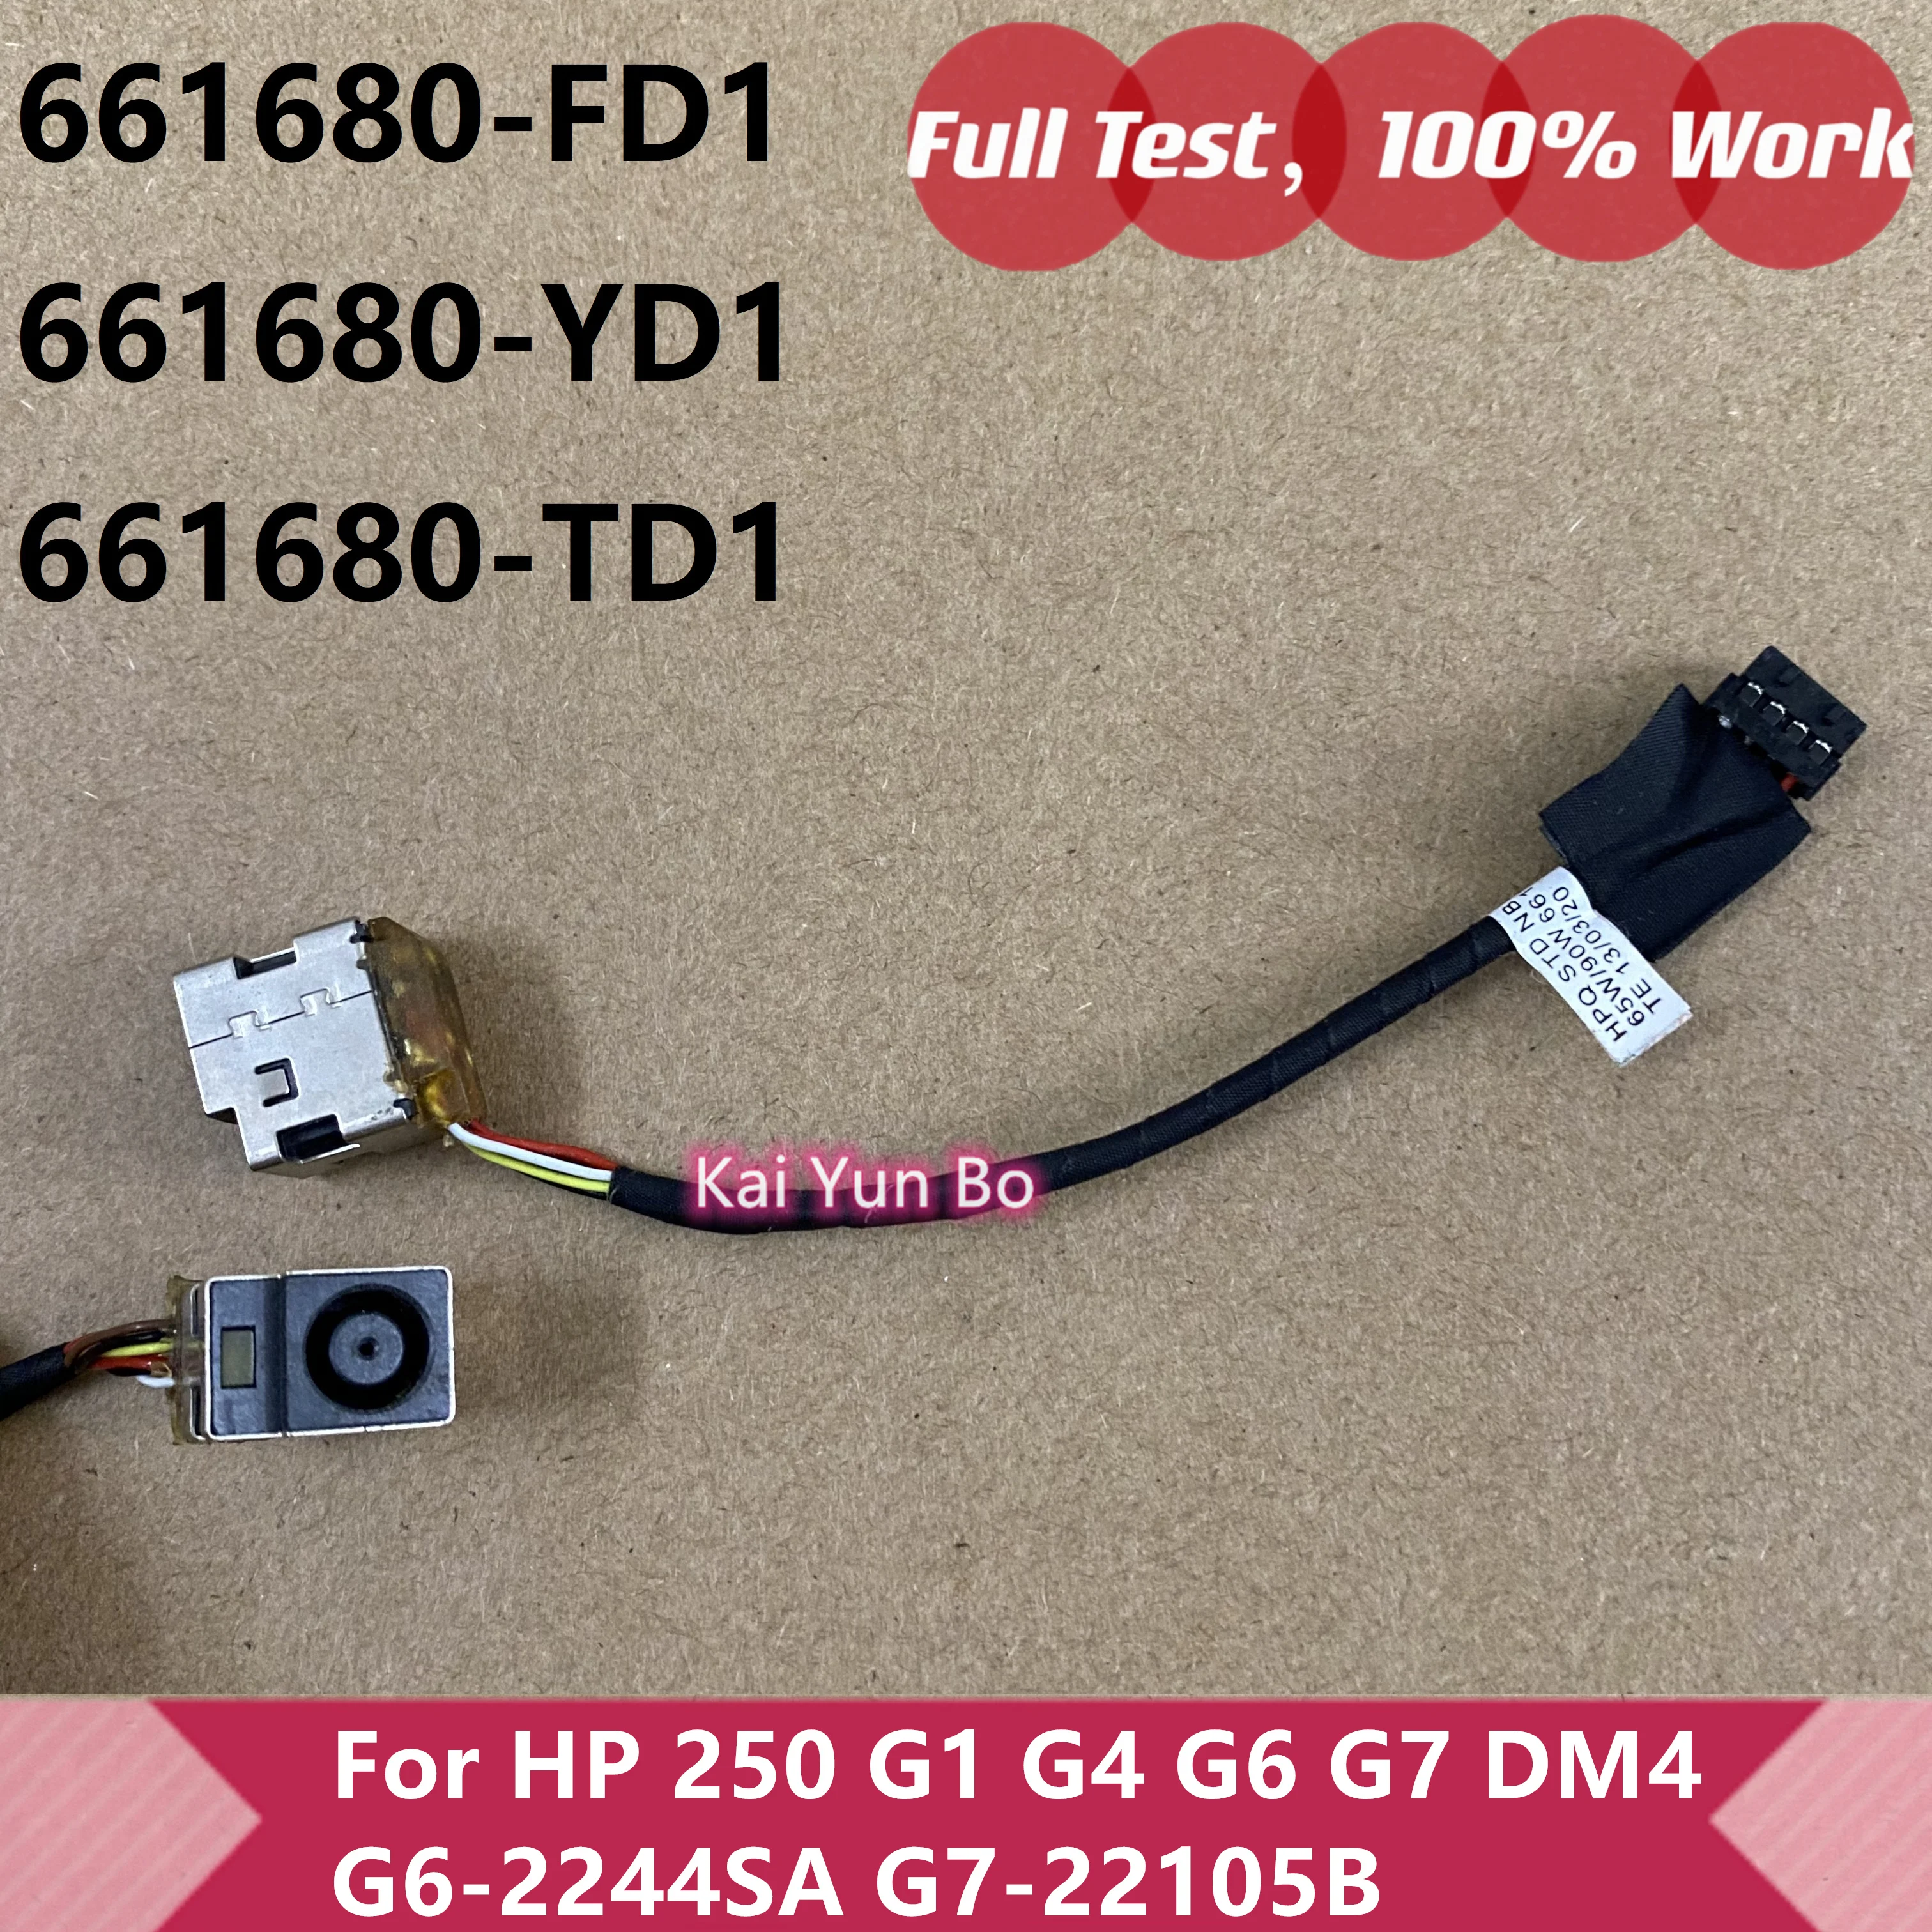 

Оригинальный кабель питания постоянного тока HP 2000 DM4 G4 G6 G7 G4-2000 250 G1 G7-22105B G7-2022 Ноутбук 661680-YD1 661680-TD1 661680-FD1